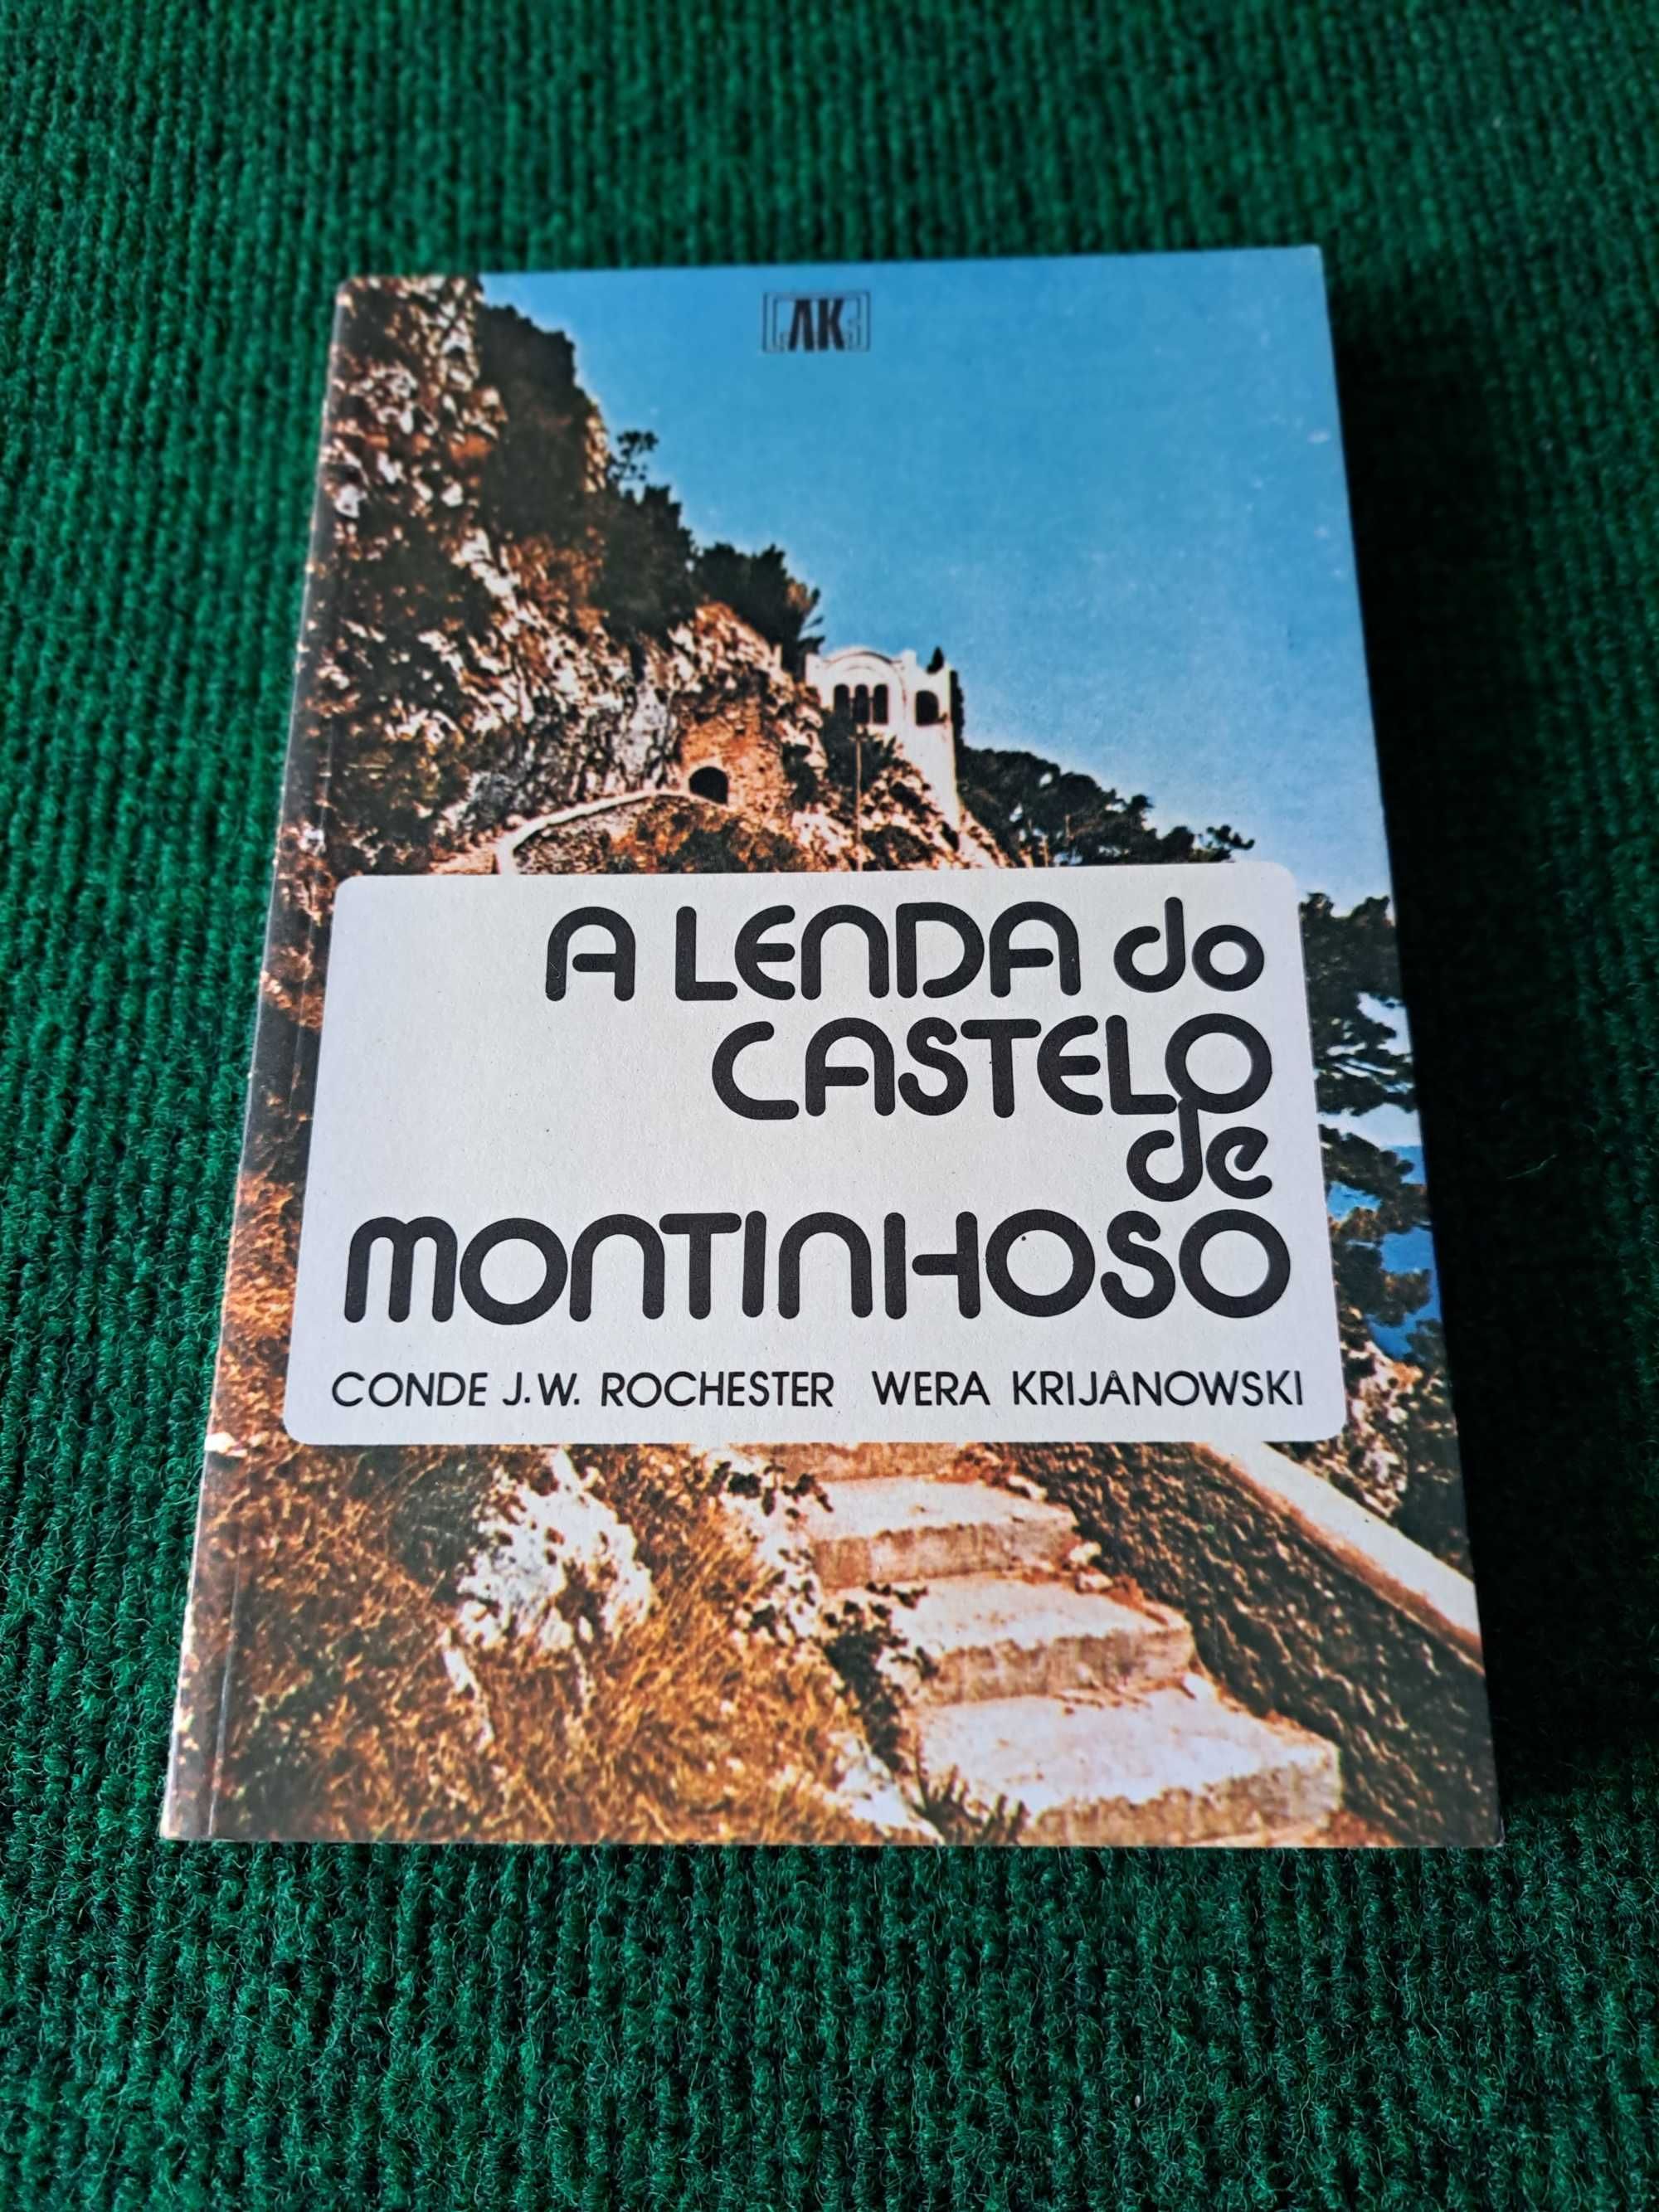 A Lenda do Castelo de Montinhoso - Conde J.W. Rochester